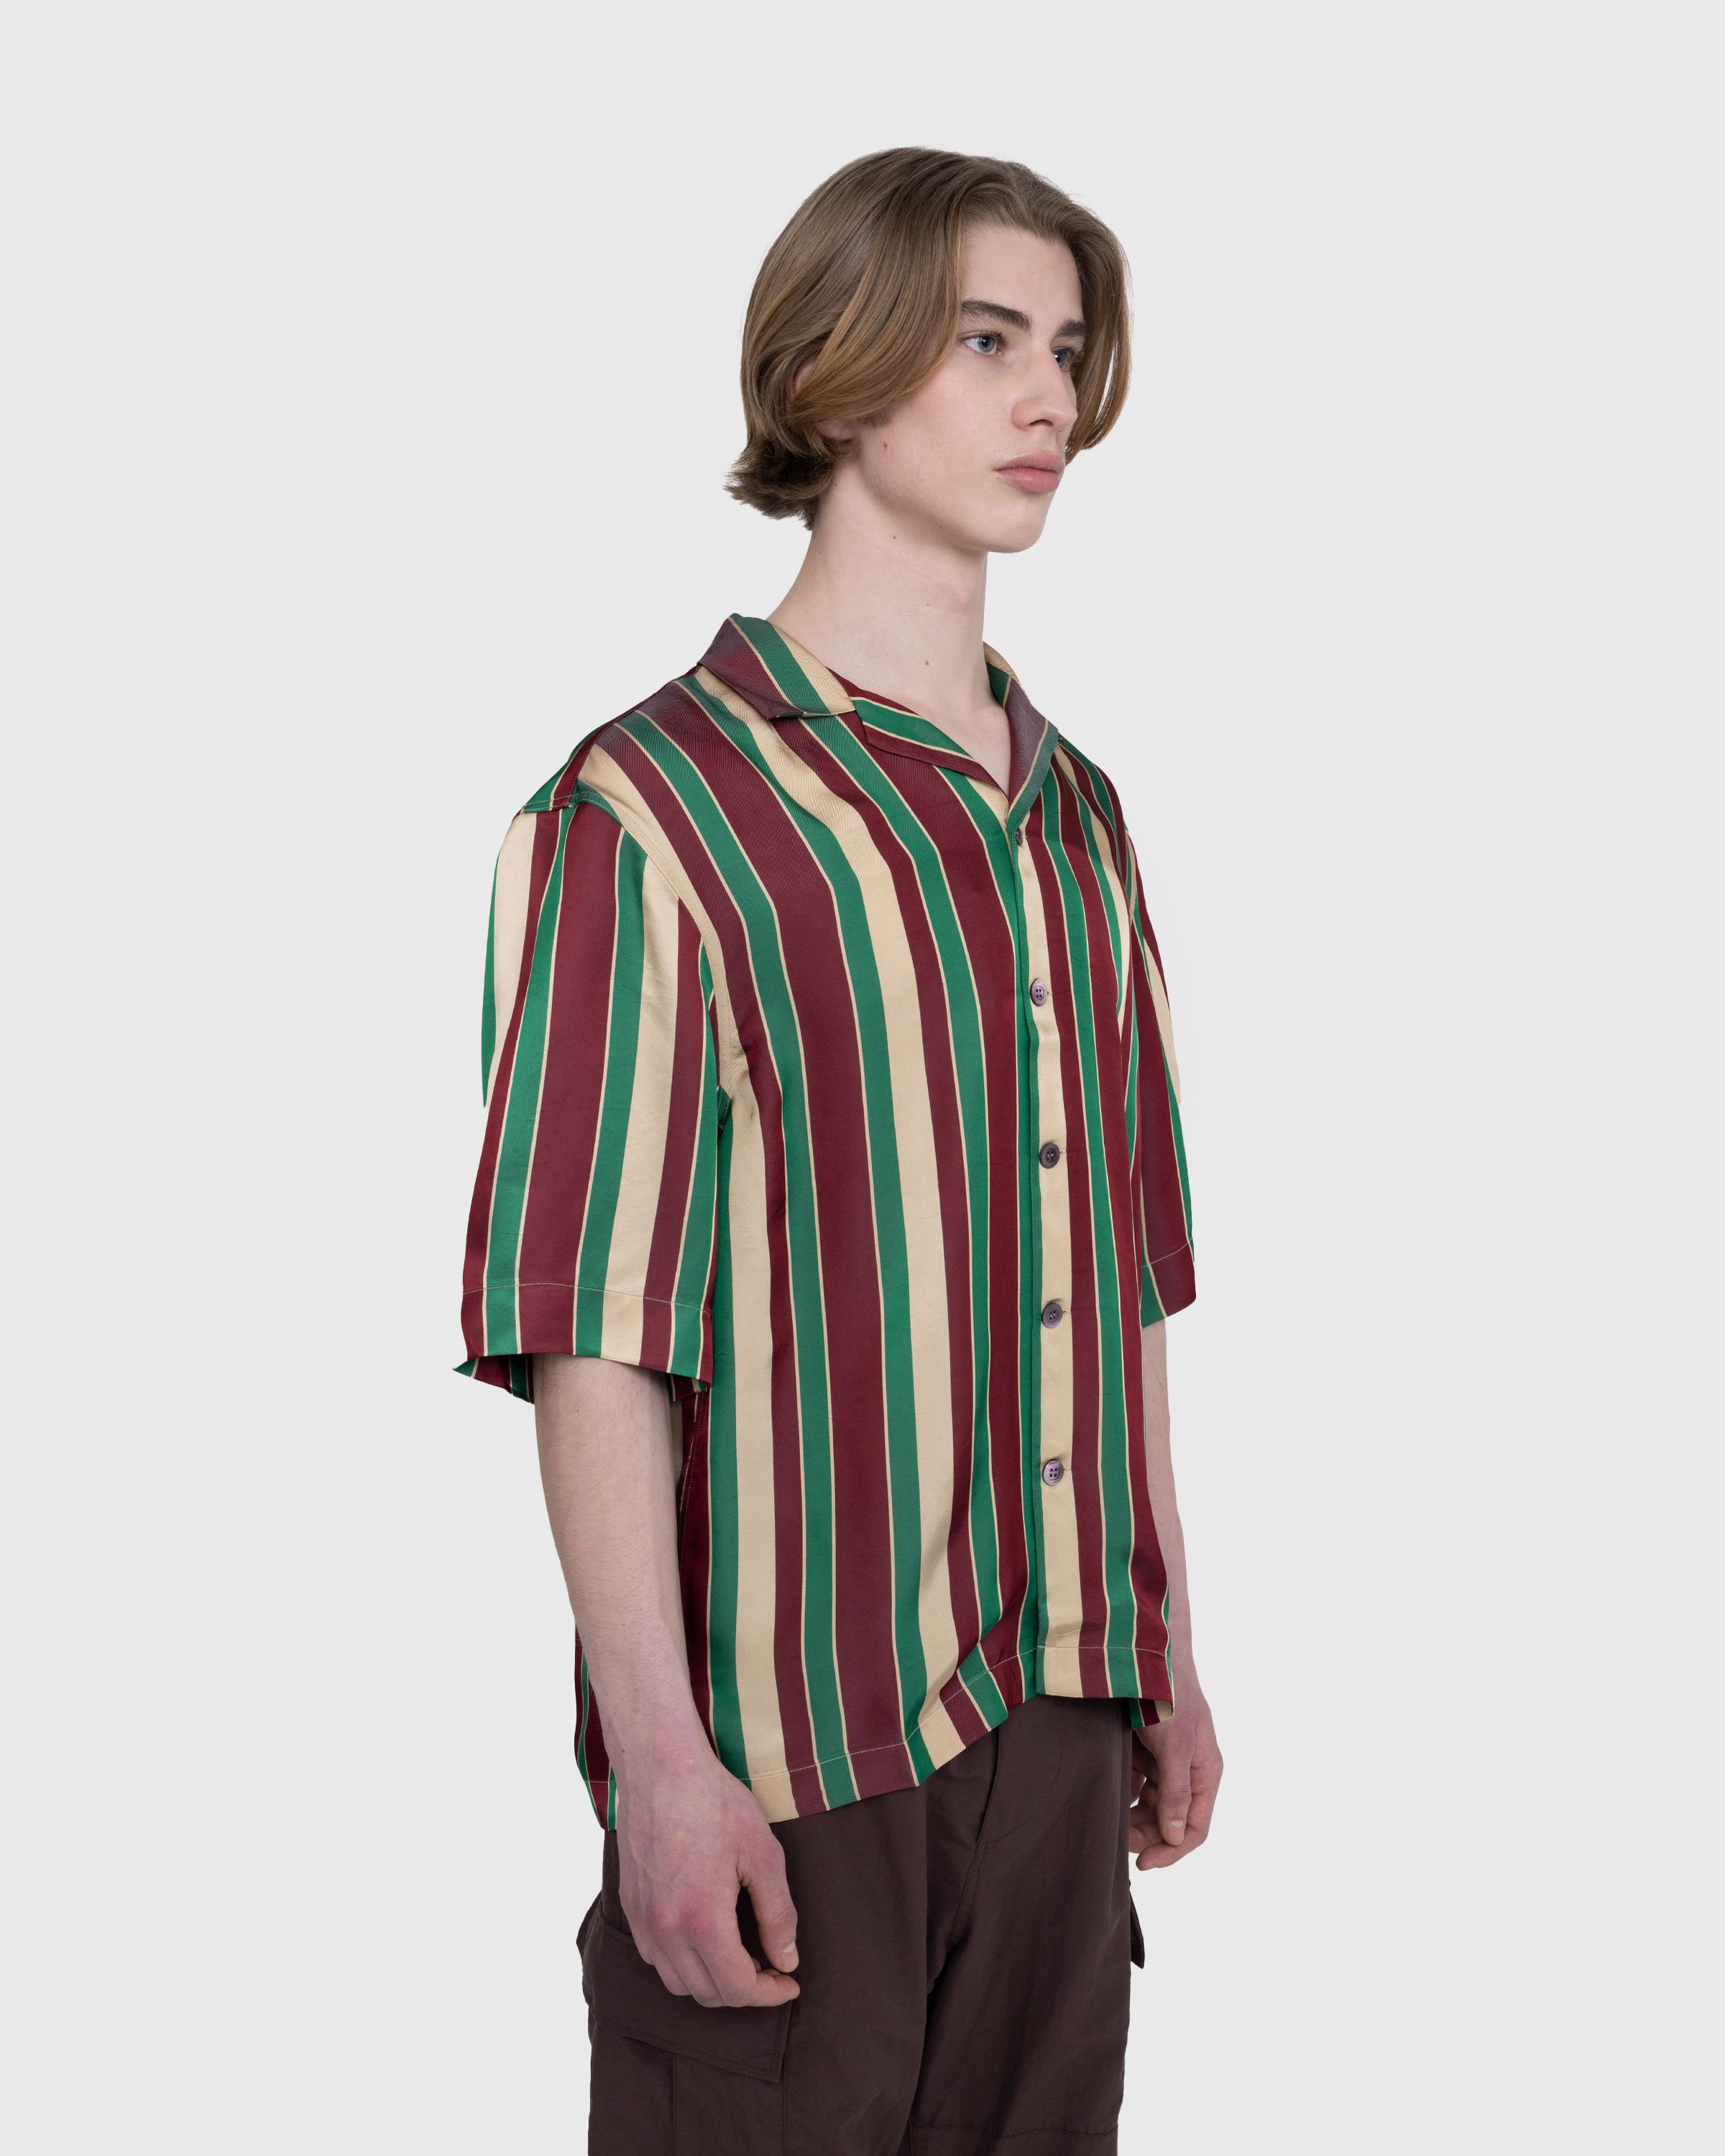 Dries van Noten - Cassi Shirt Bordeaux - Clothing - Multi - Image 4